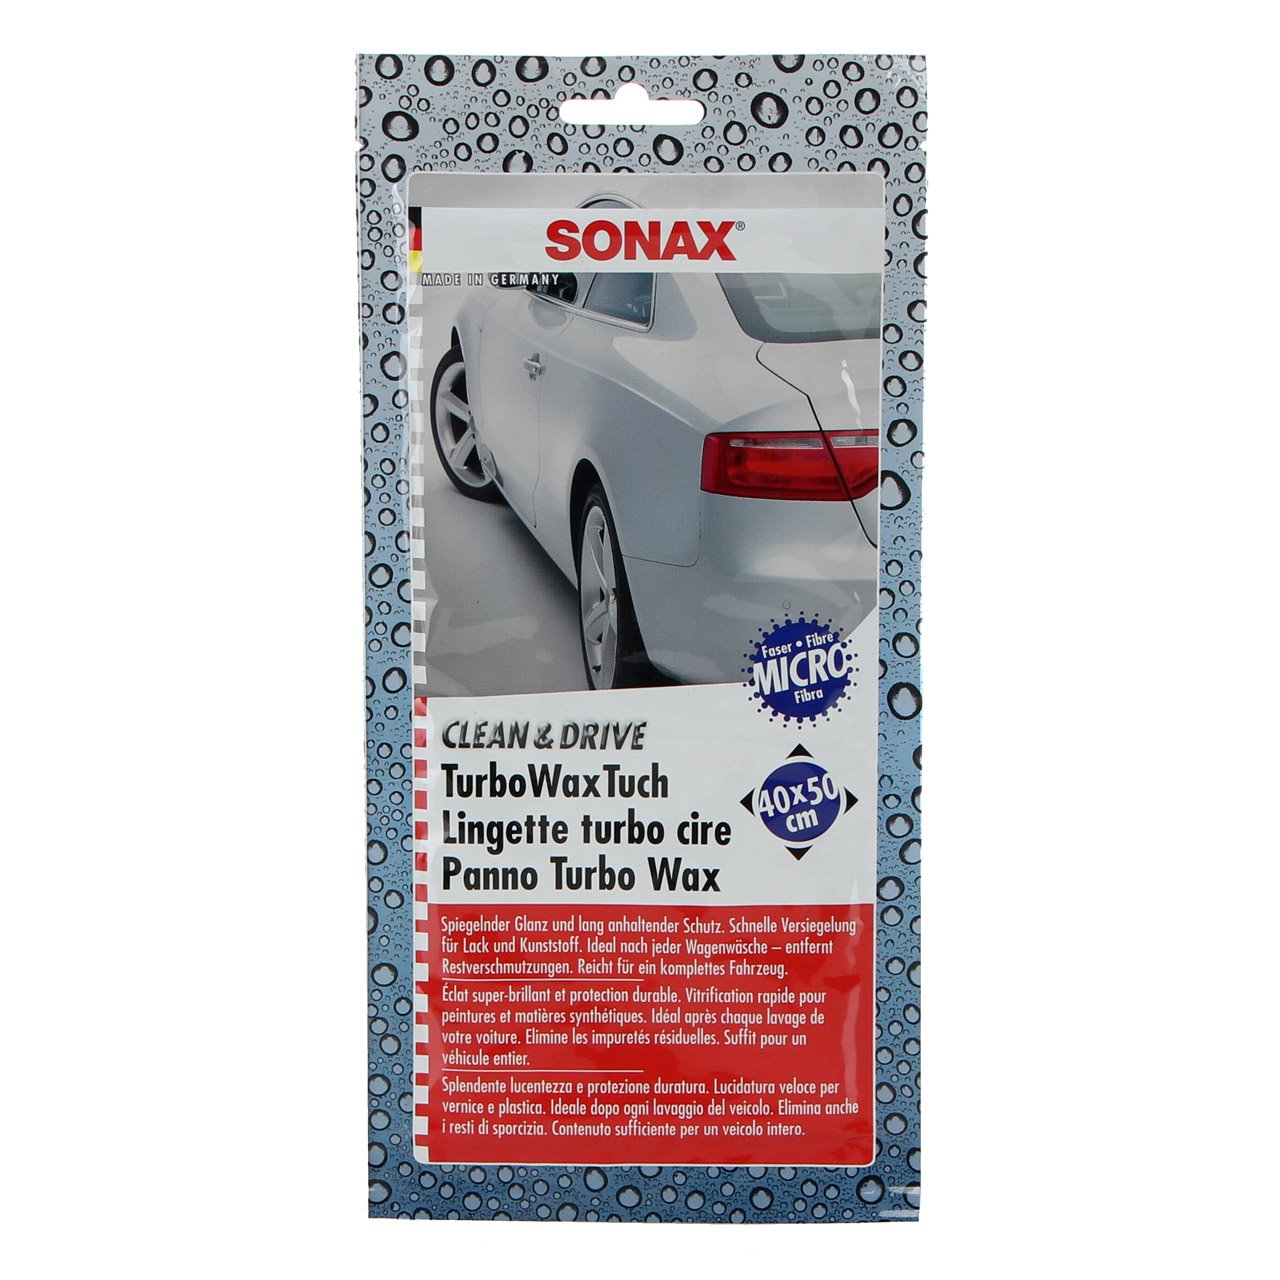 24x SONAX 414000 TurboWaxTuch CLEAN & DRIVE Wachstuch Microfaser Tuch 40x50cm